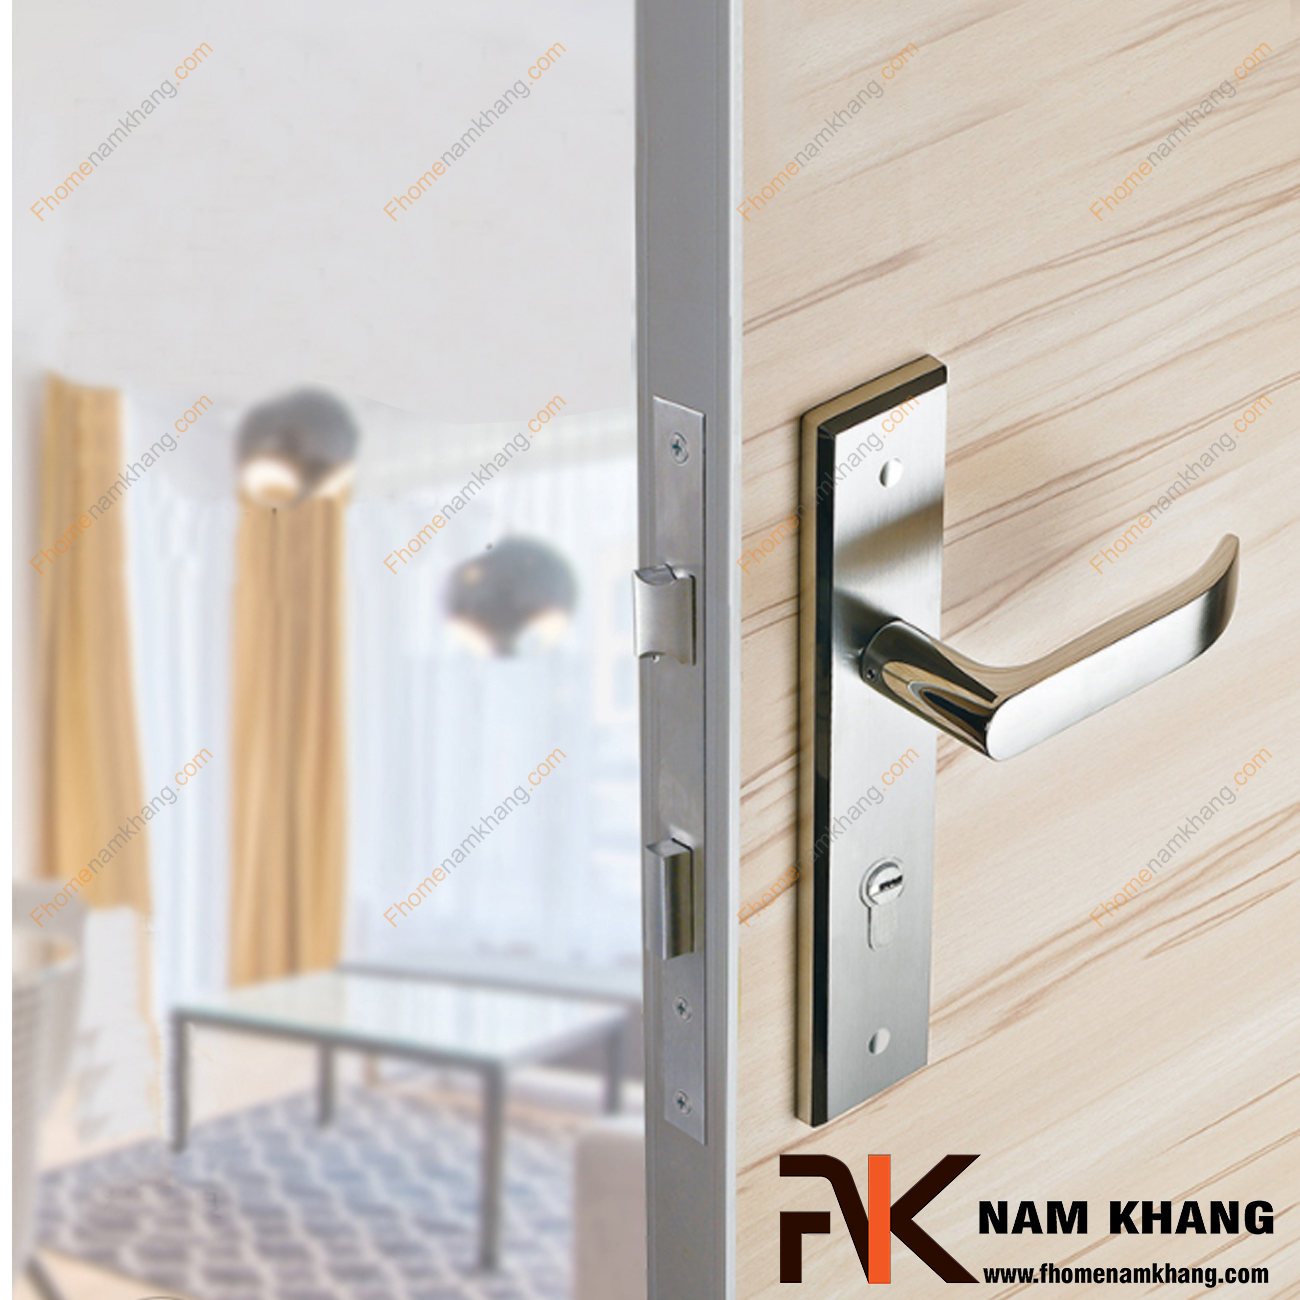 Khóa cửa chính bằng inox cao cấp NK191L-INOX là một dạng khóa cửa thông dụng có thiết kế rất đơn giản từ chất liệu inox cao cấp.  Sản phẩm được đảm bảo độ bền đẹp và khả năng ứng dụng cao trên nhiều phong cách vân gỗ khác nhau.